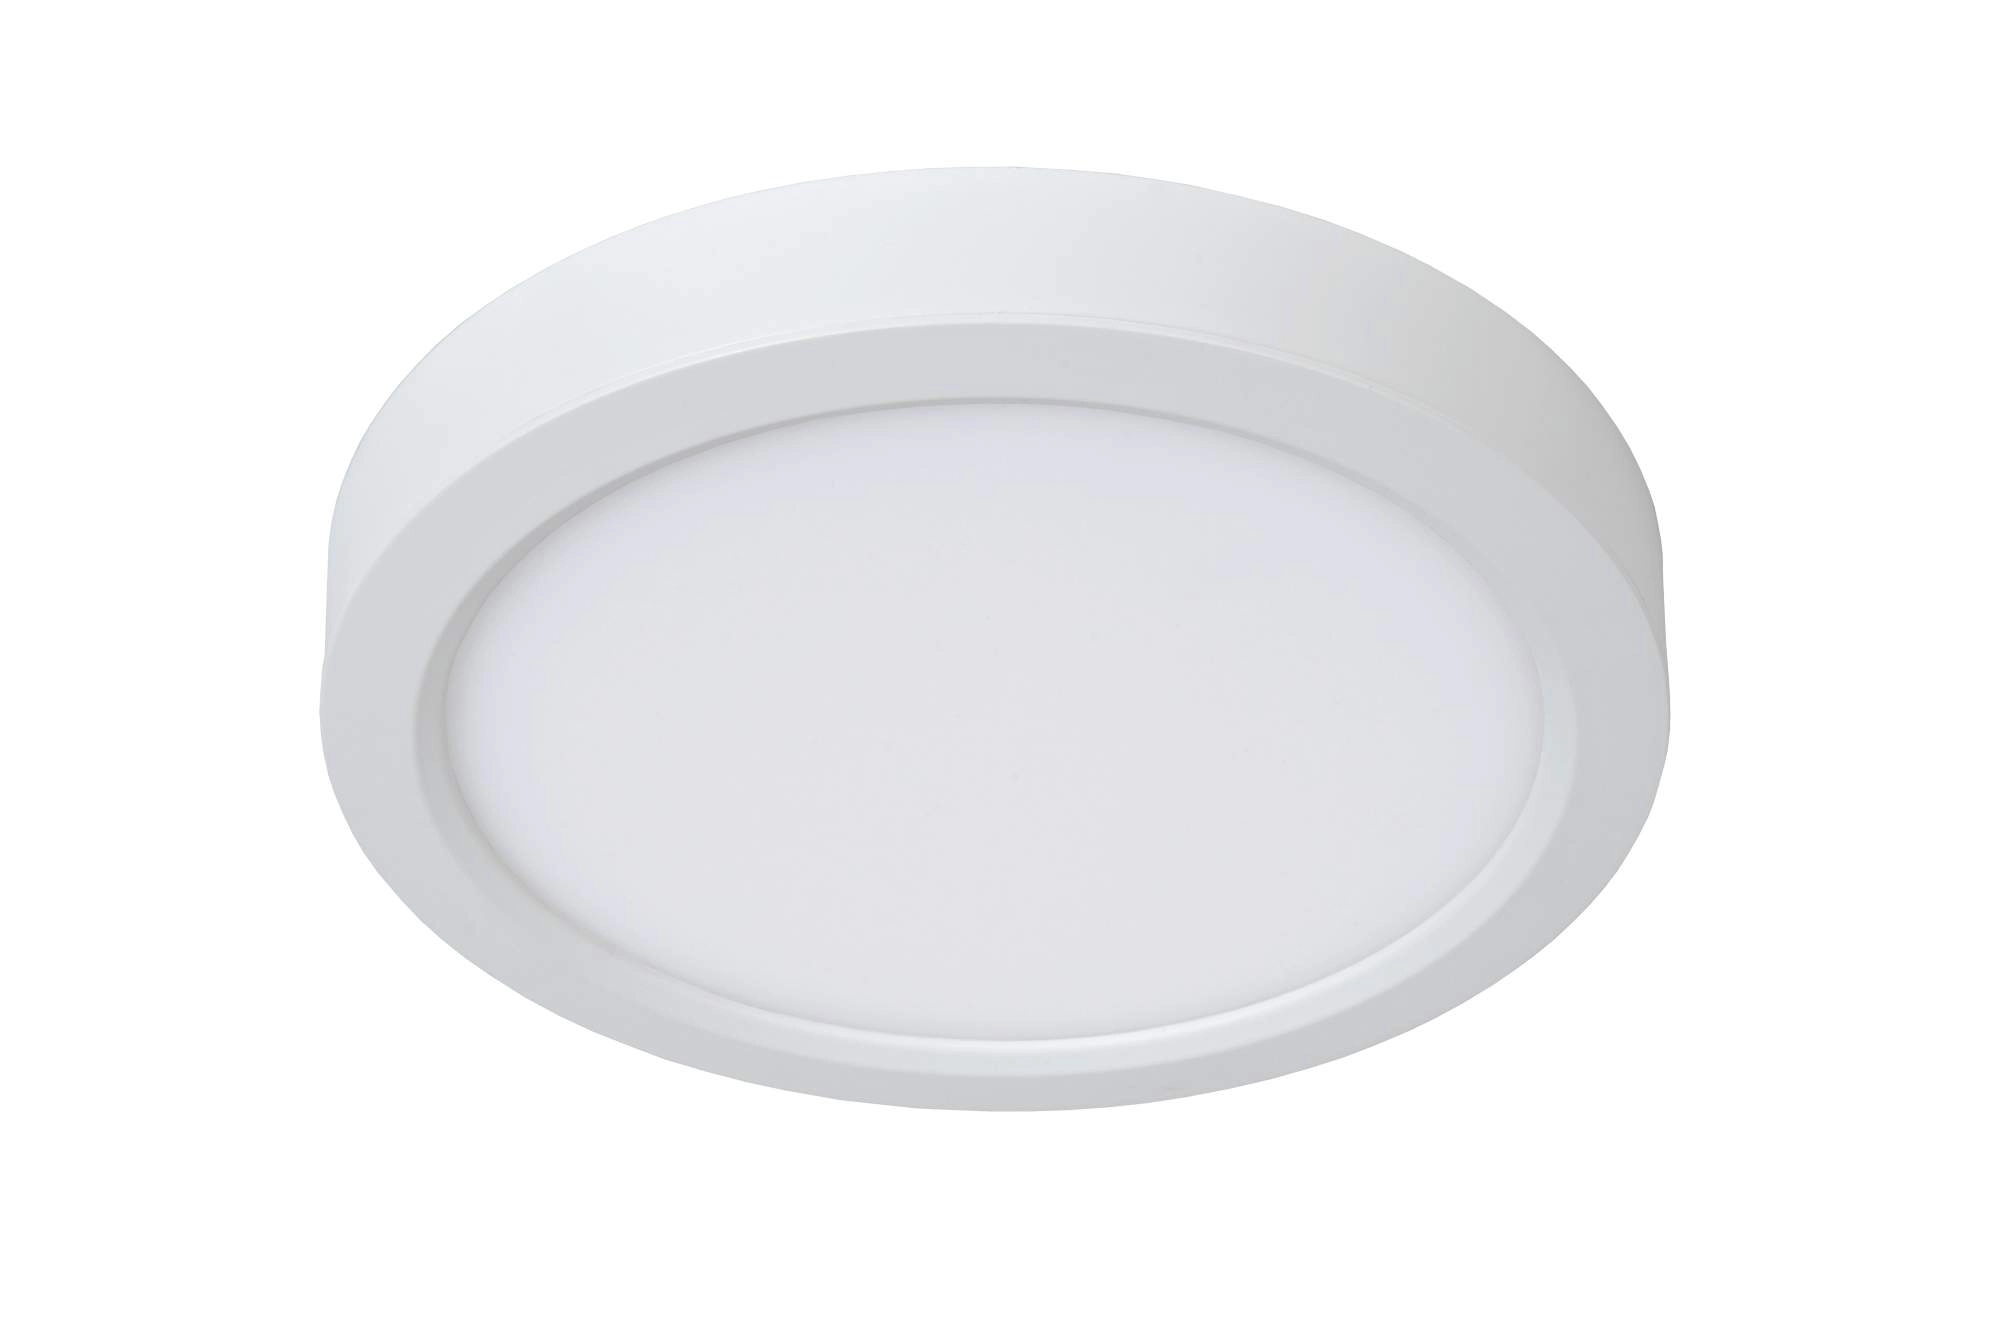 LU 07105/18/31 Lucide TENDO-LED - Flush ceiling light - Ø 22 cm - LED - 1x18W 3000K - White